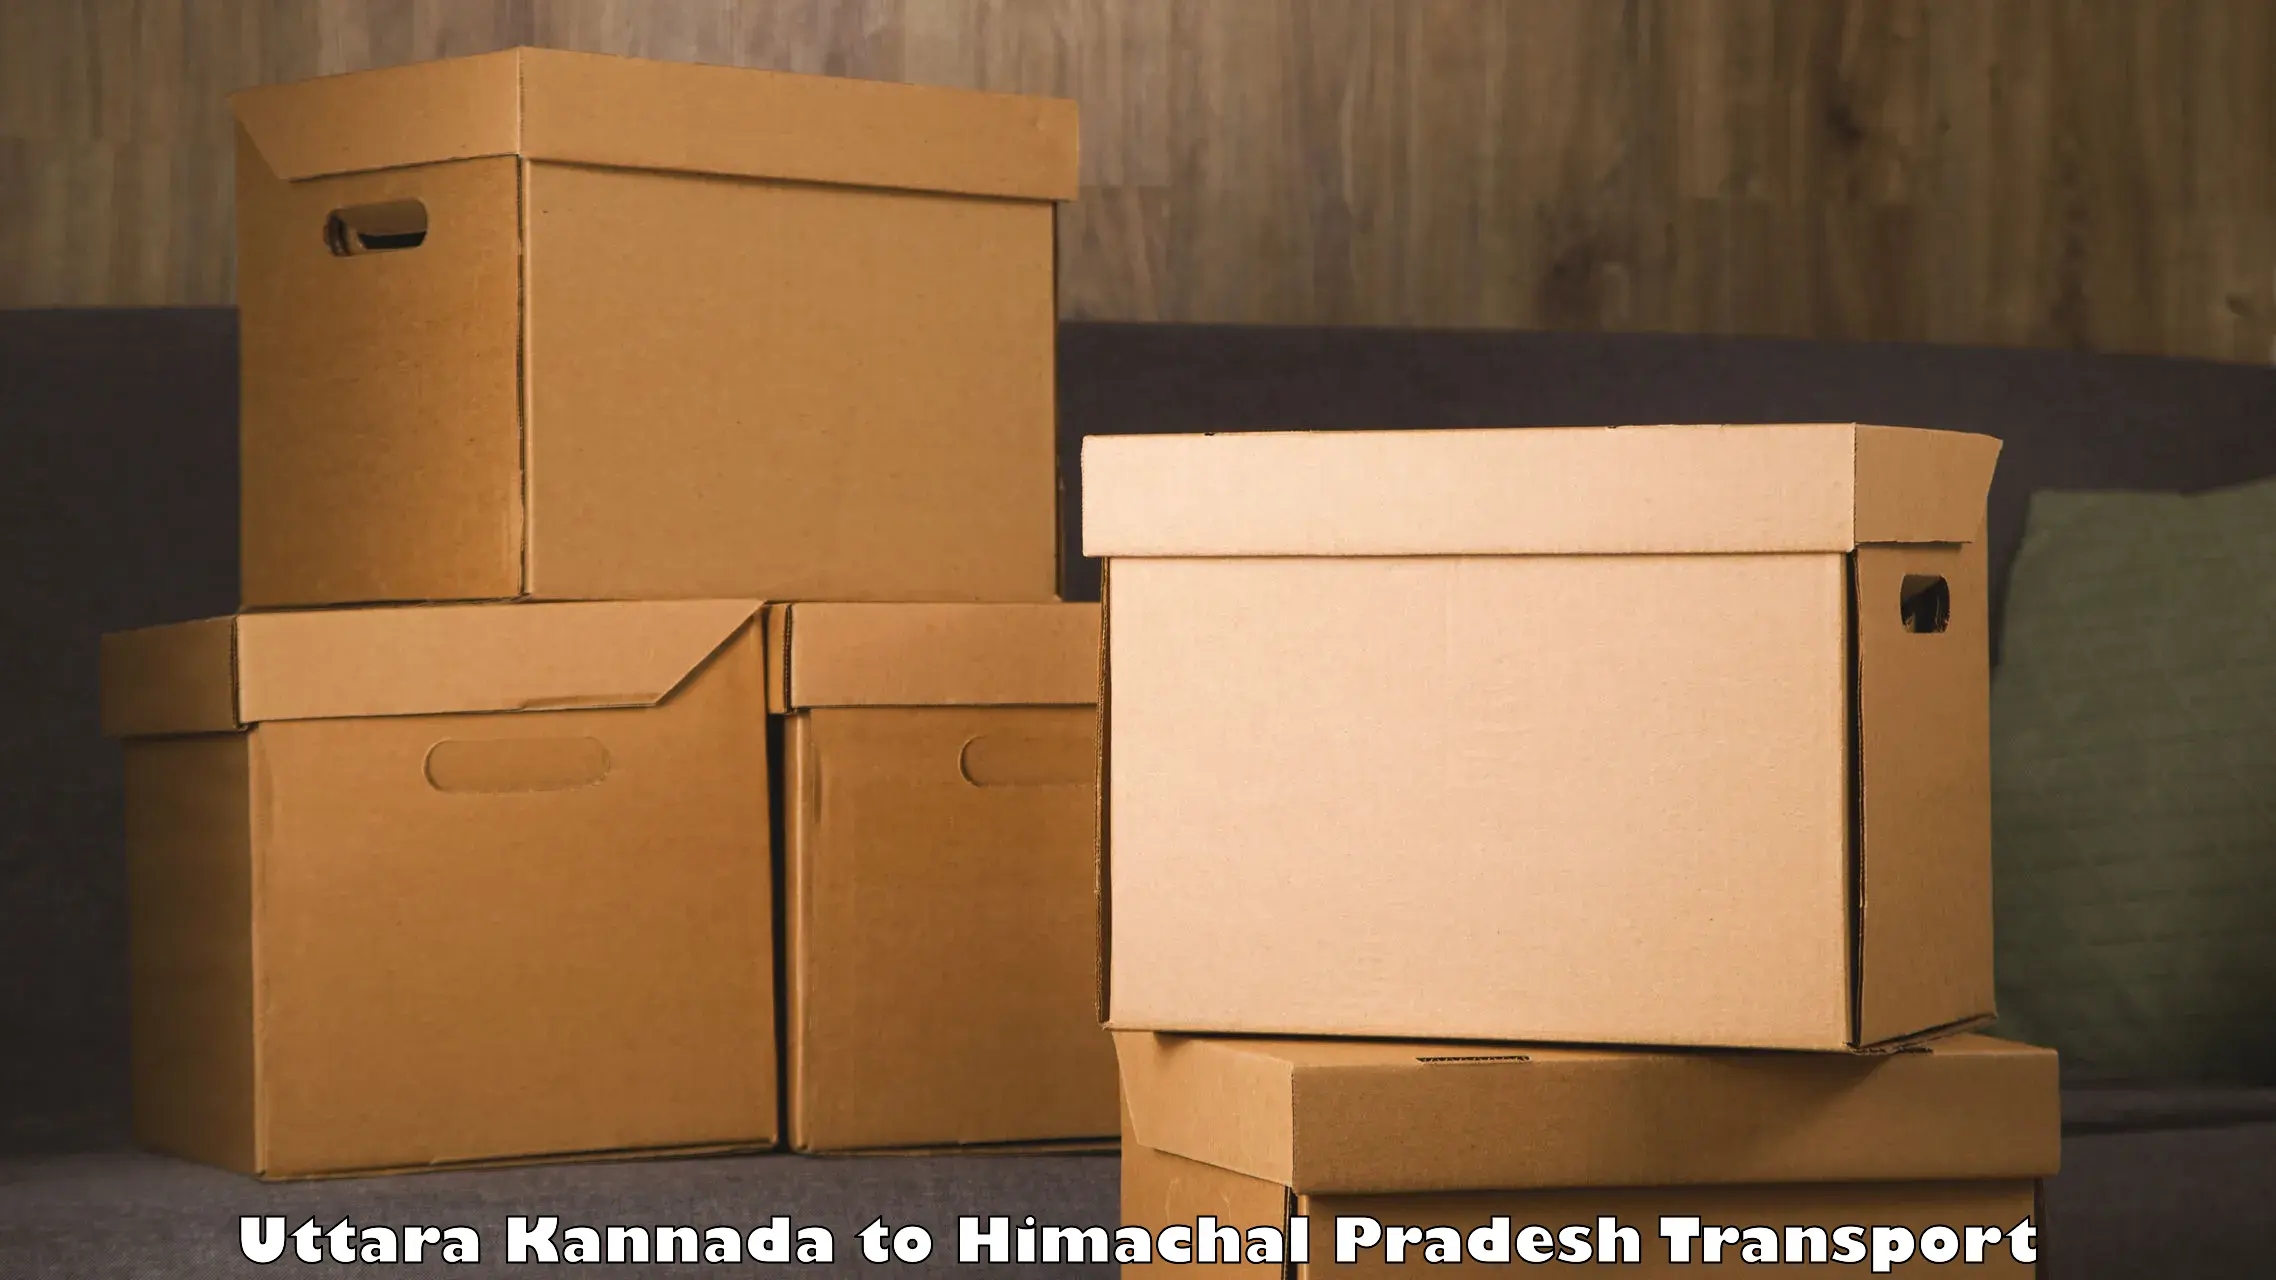 Delivery service Uttara Kannada to Nagwain